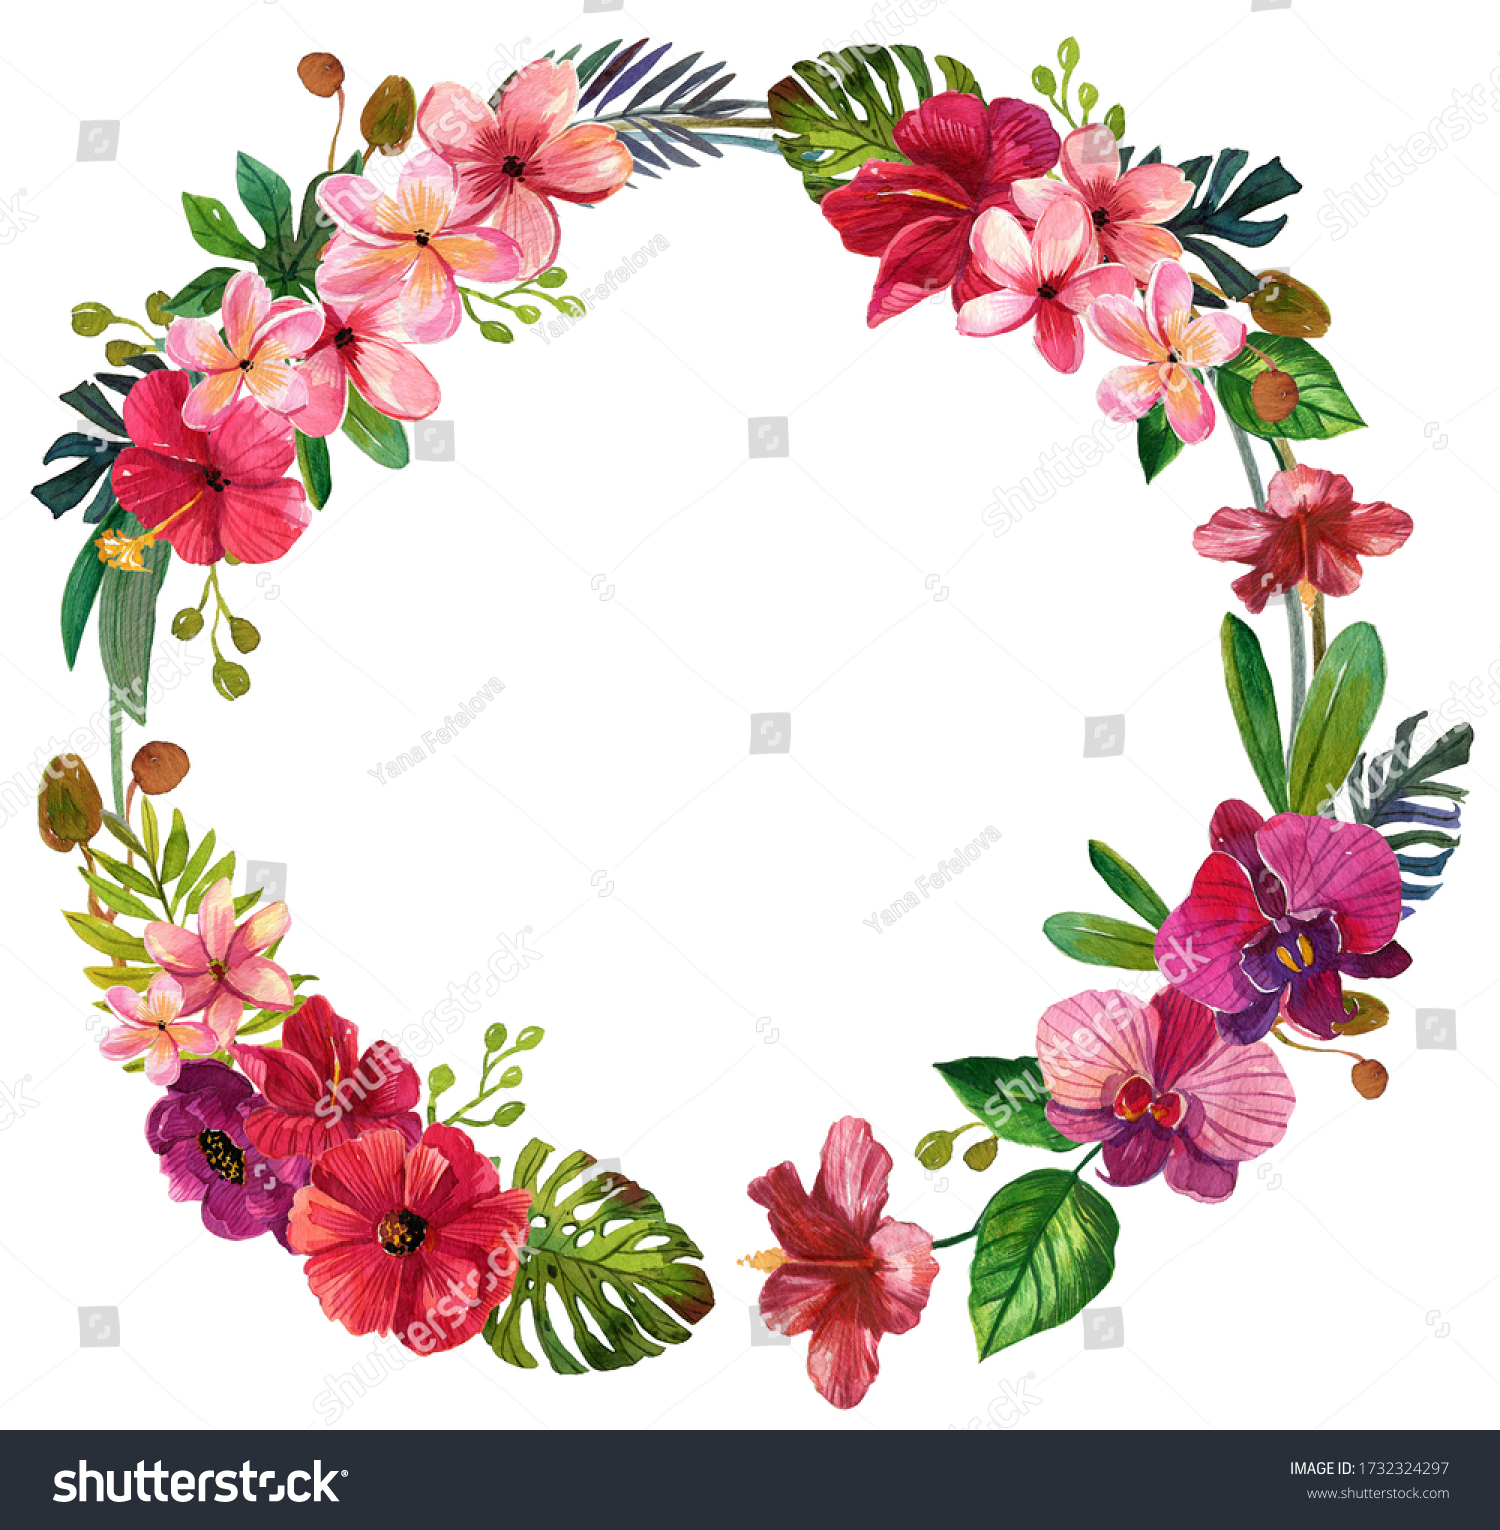 水彩の熱帯の花がクリップアート 熱帯のヤシの葉 プルメリア 蘭 ハワイ の花束 縁取り 結婚式の文房具 挨拶 壁紙 ファッション テンプレート はがき 白い背景に分離 のイラスト素材